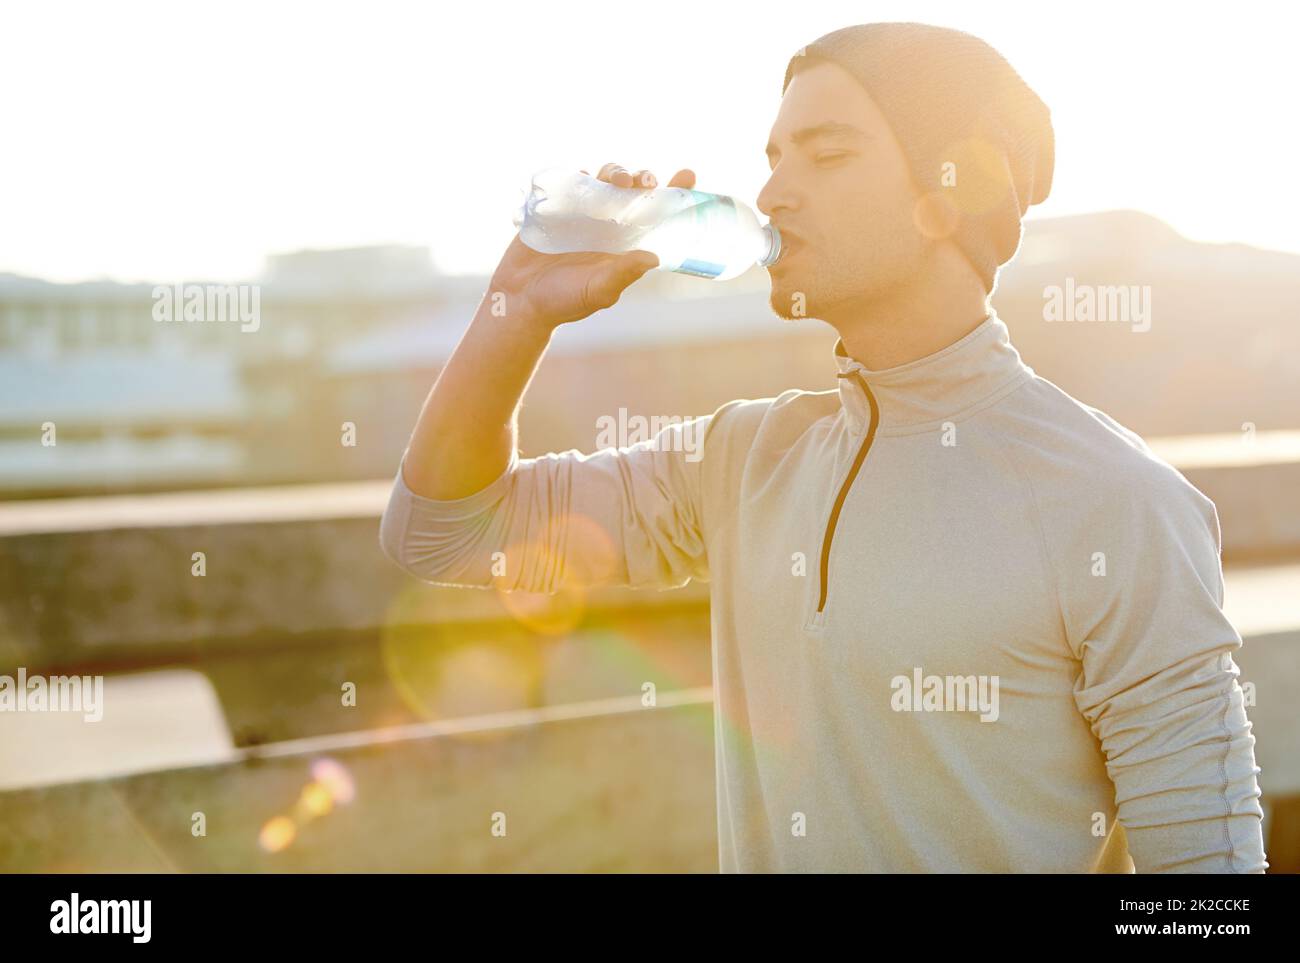 Schnell laufen, tief trinken. Aufnahme eines jungen Joggers, der während eines Laufs in der Stadt Wasser trinkt. Stockfoto